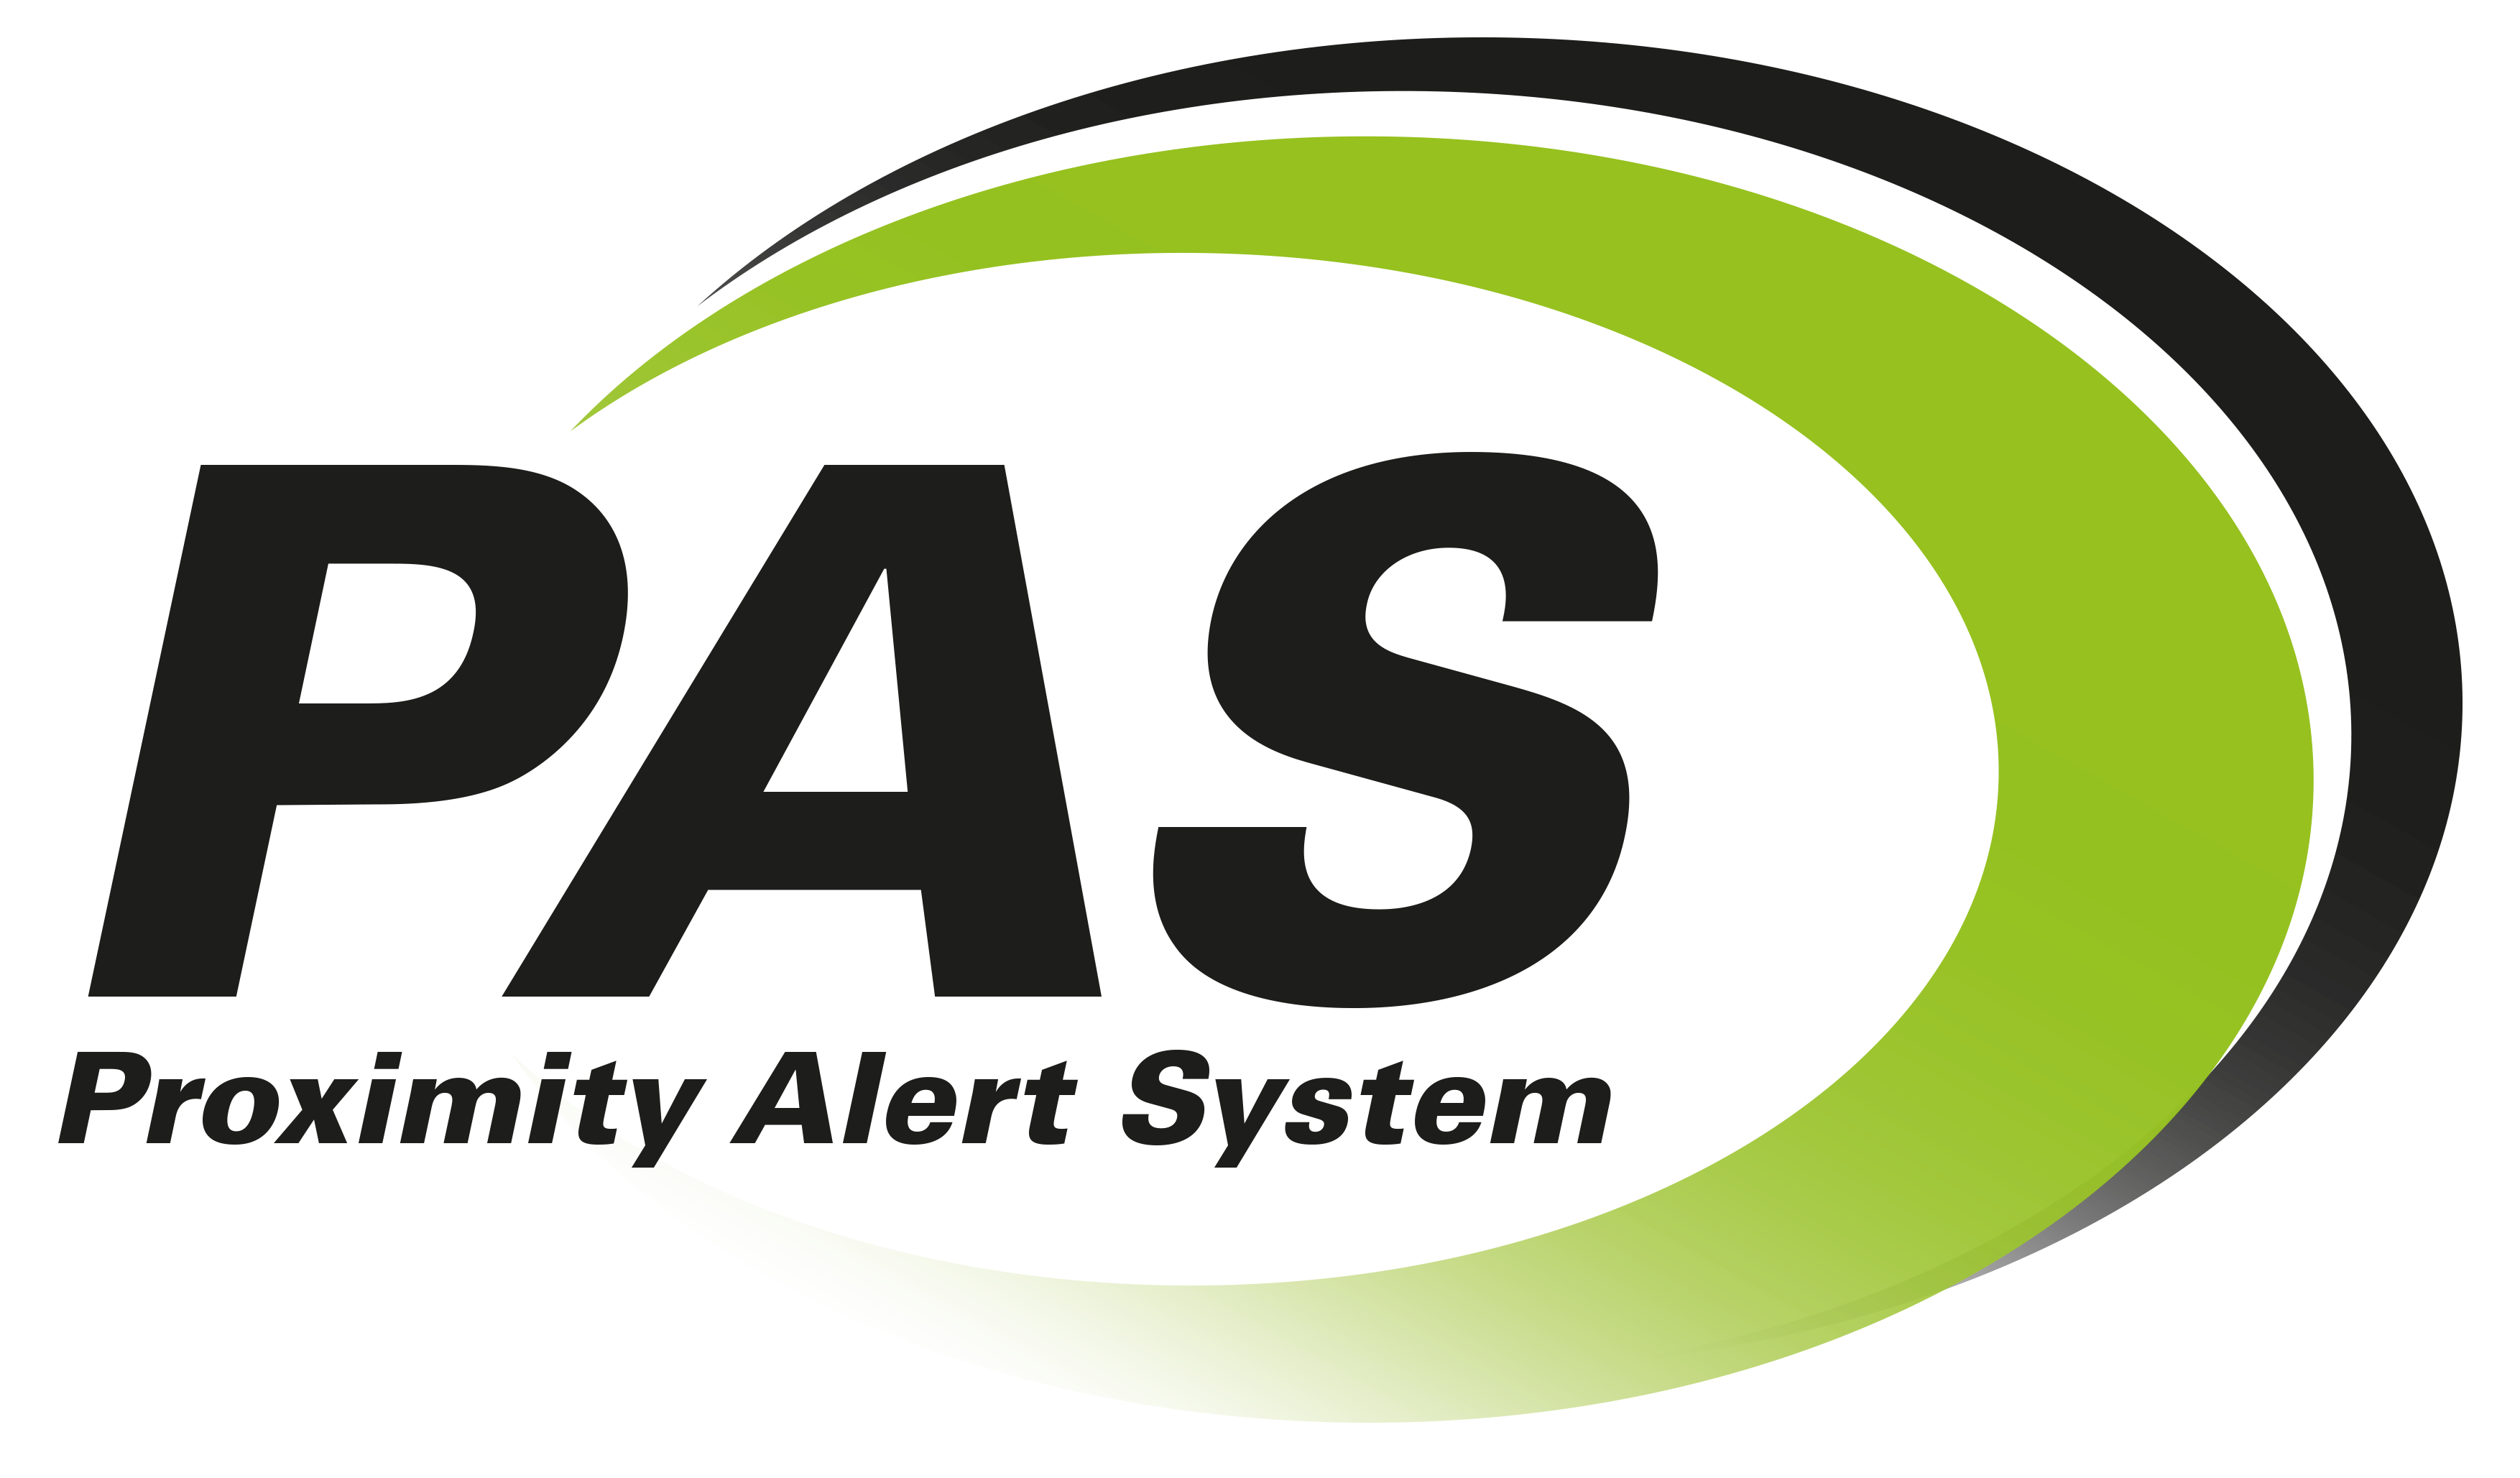 PBE Axell PAS (Proximity Alert System)